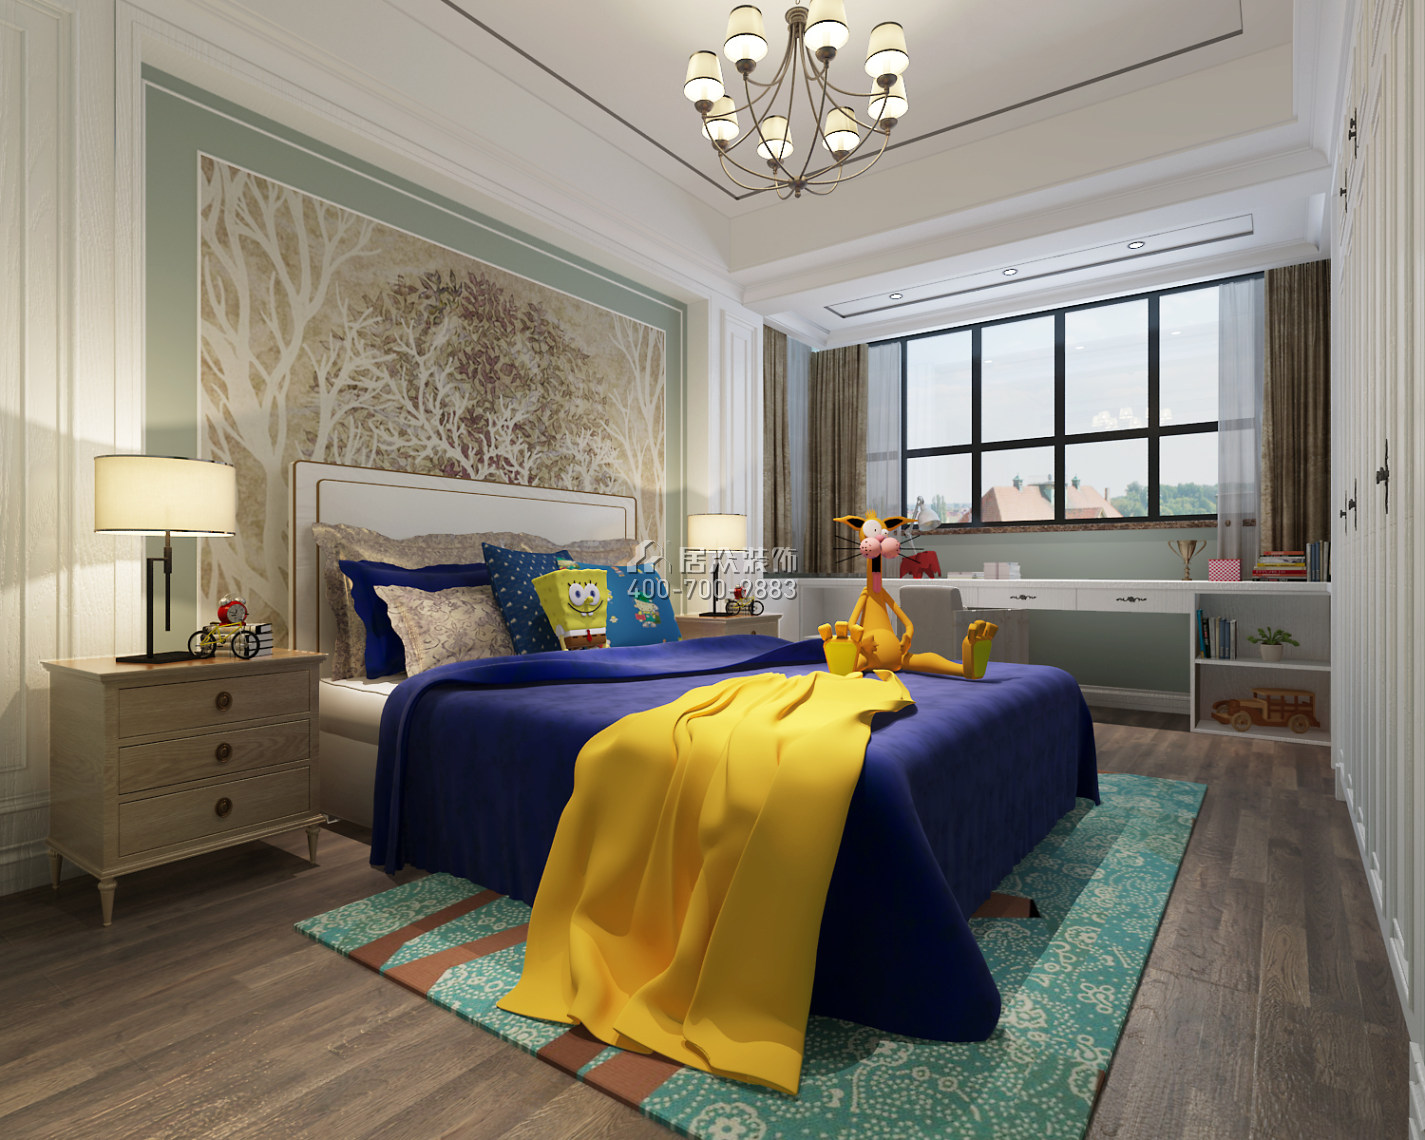 滨湖名苑177平方米美式风格平层户型卧室装修效果图